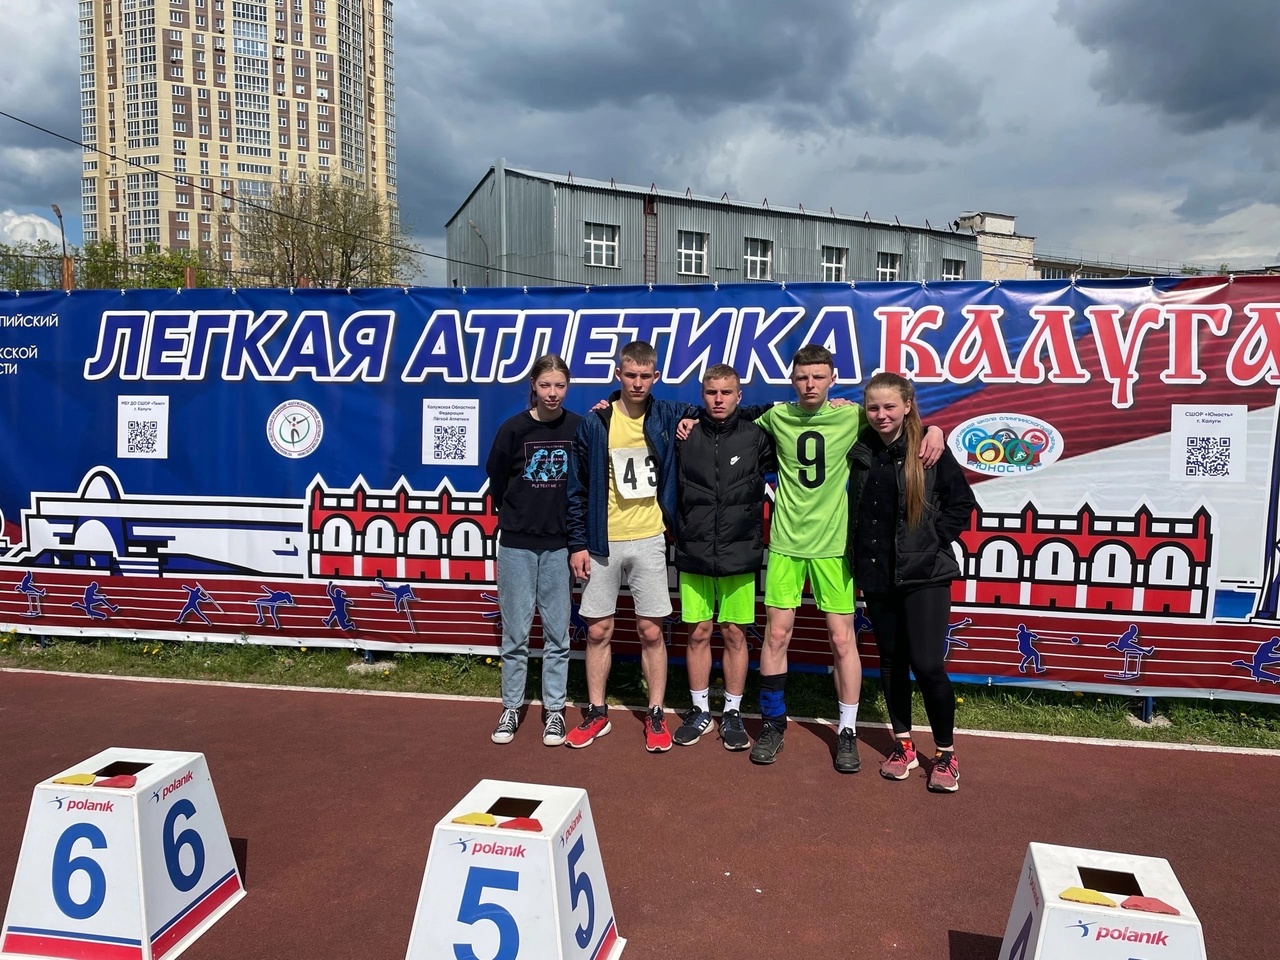 Калужская школьная лига по легкой атлетике.